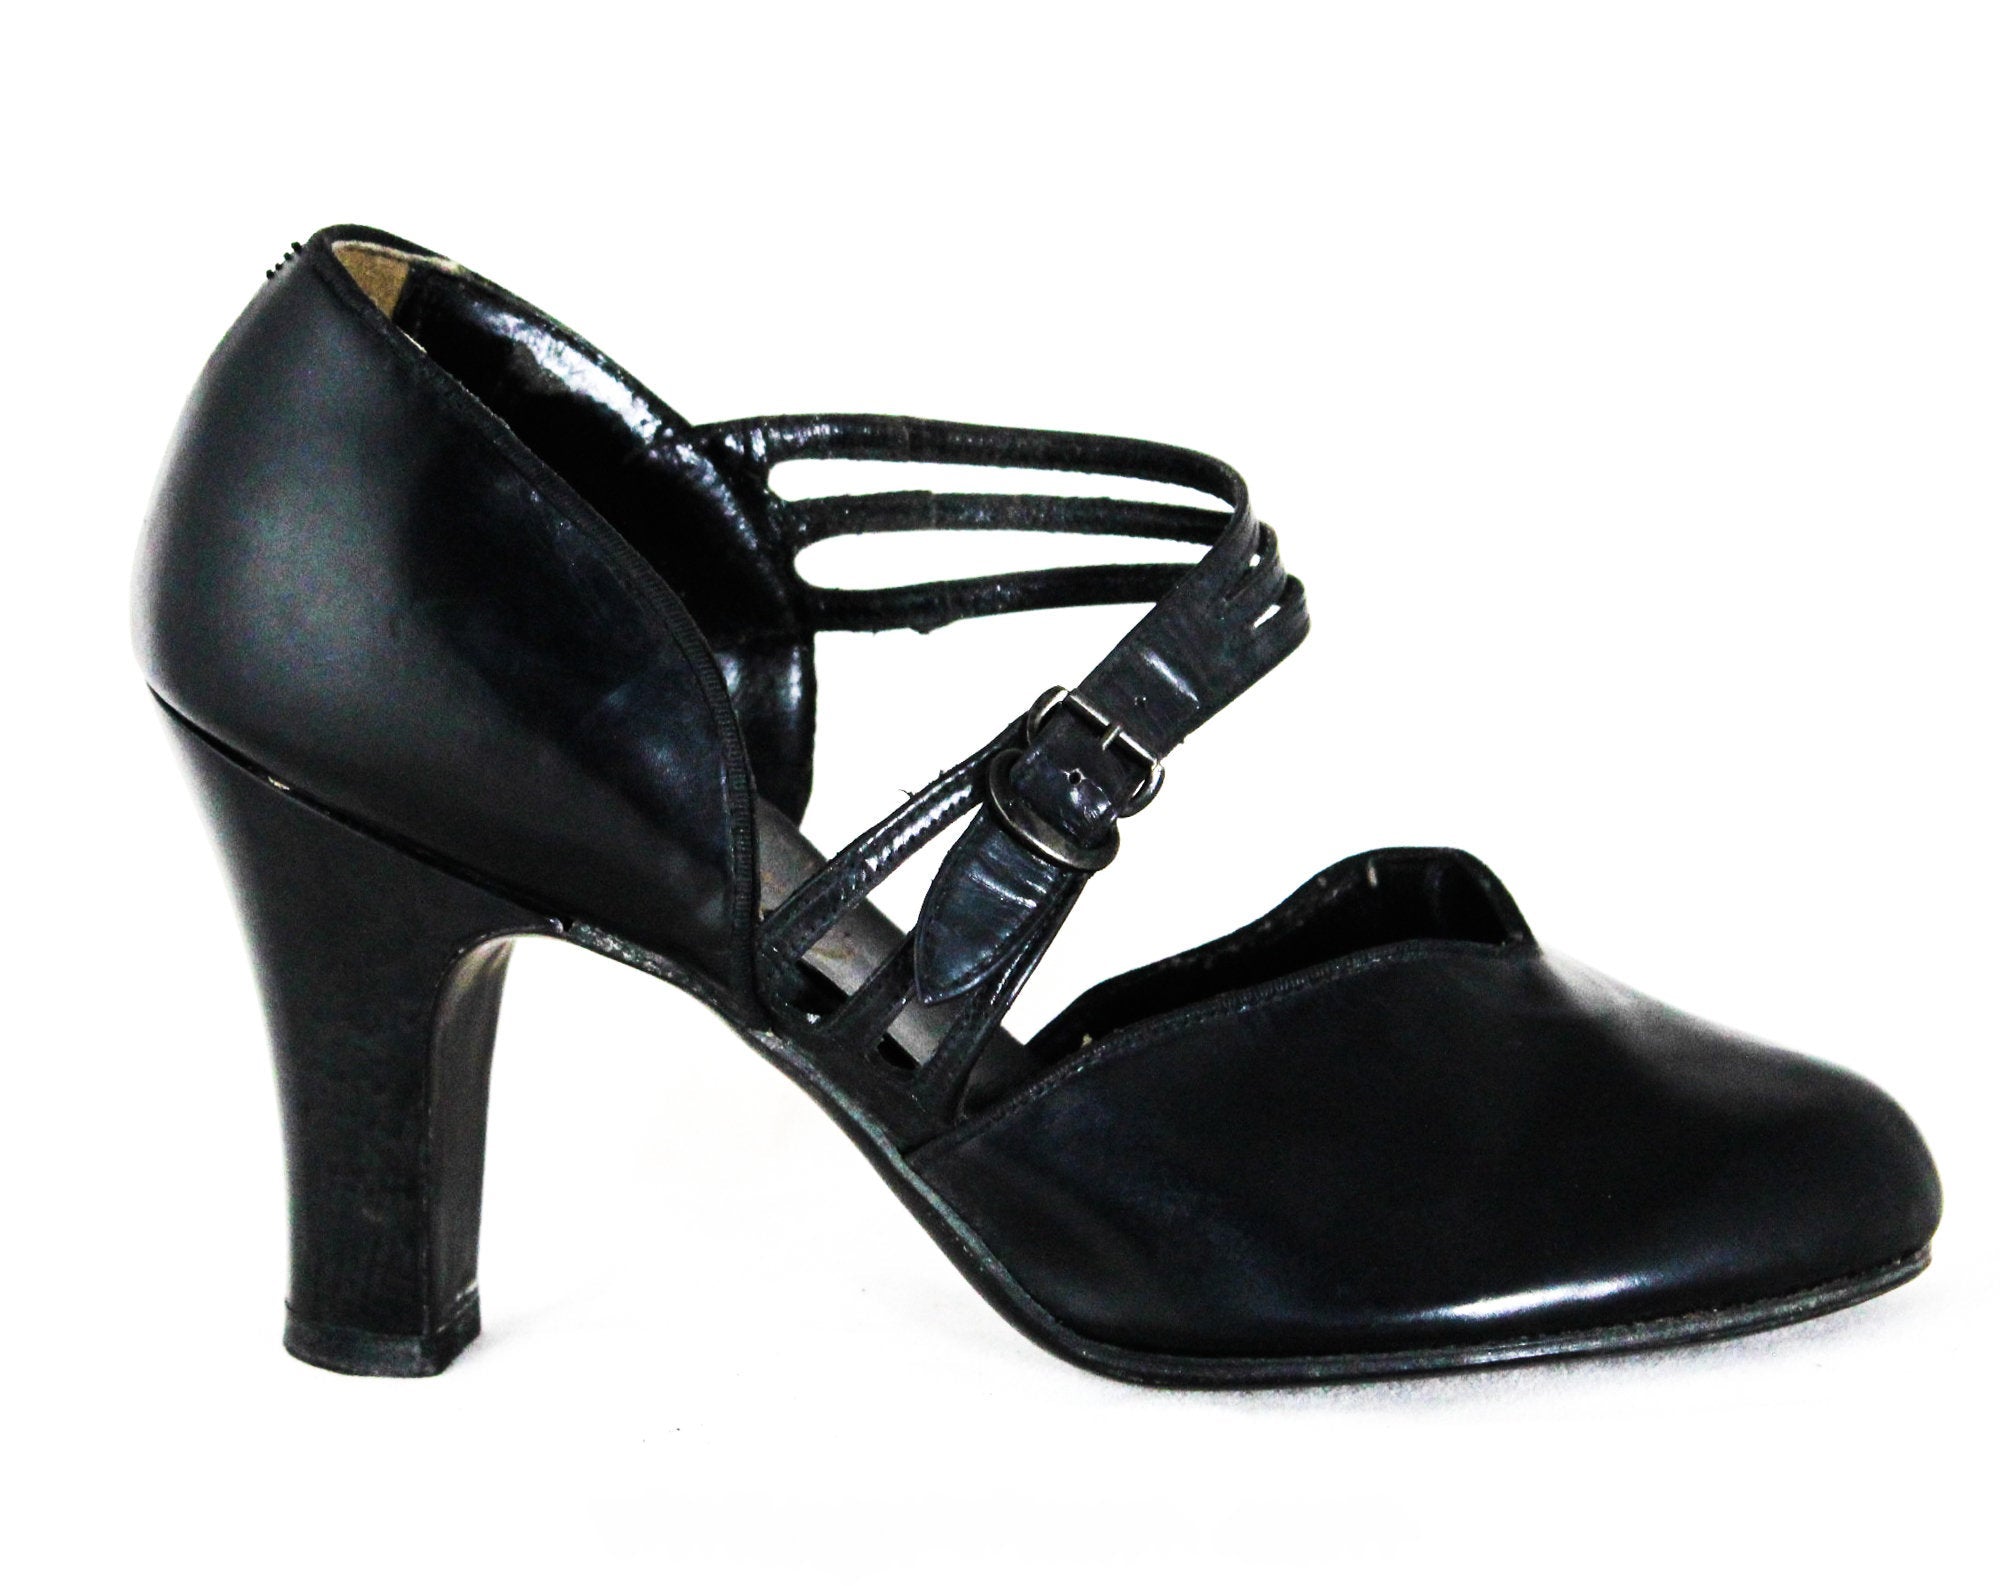 black court shoes size 4.5